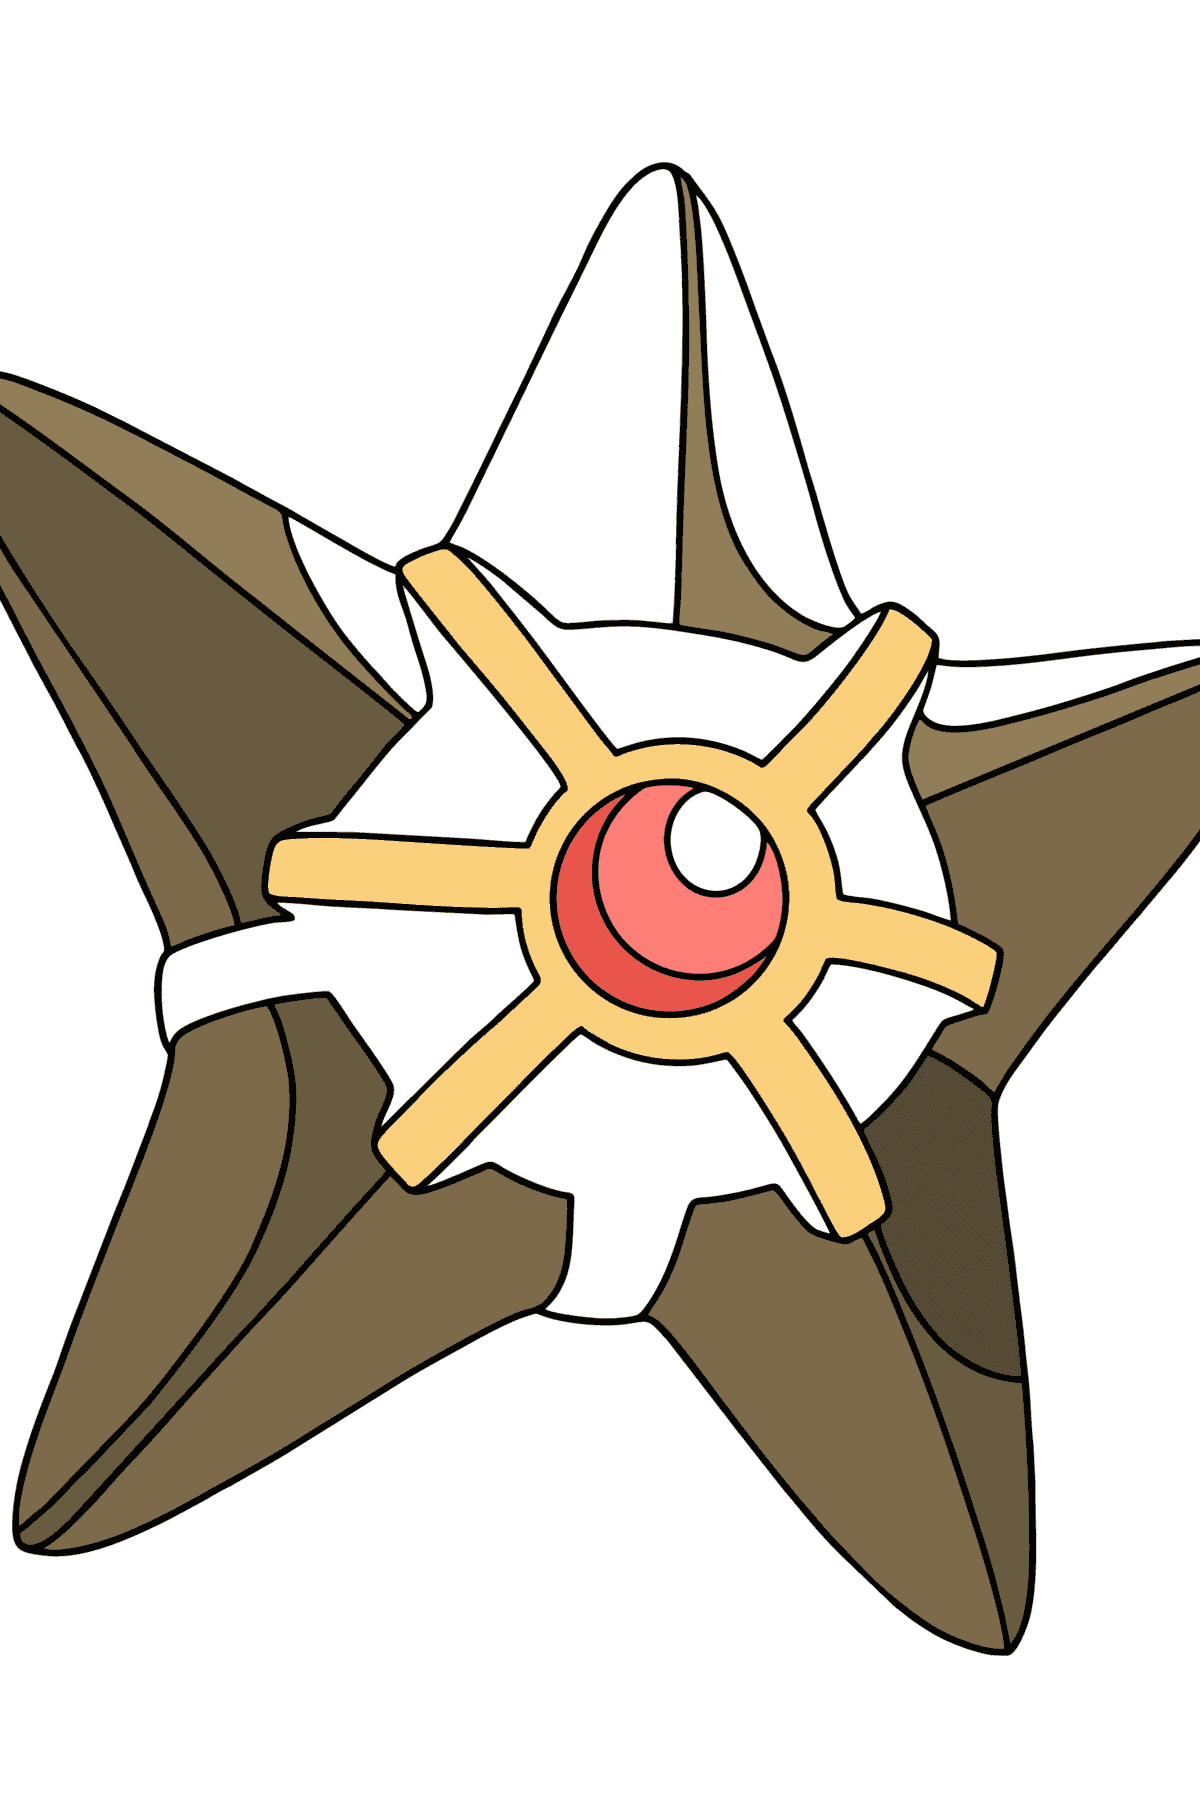 Desenho de Pokémon XY Staryu para colorir - Imagens para Colorir para Crianças